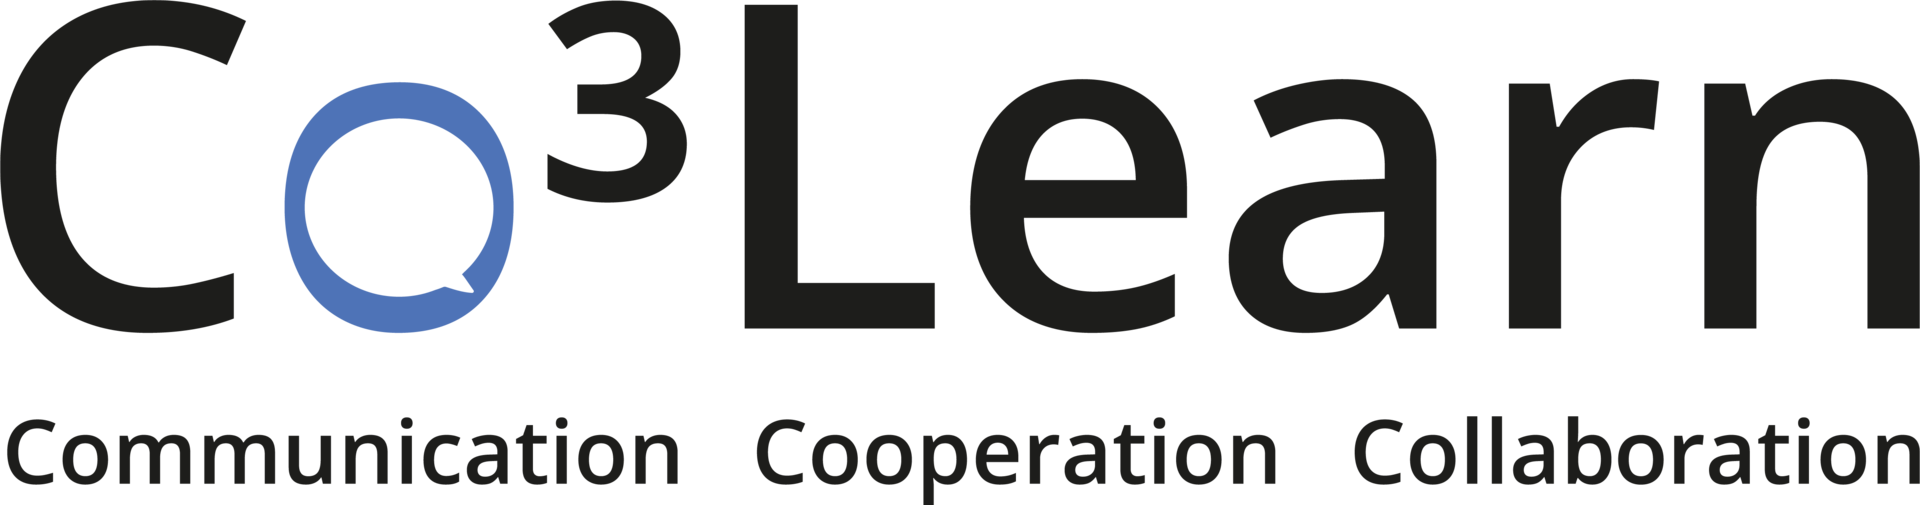 Co3Learn Logo